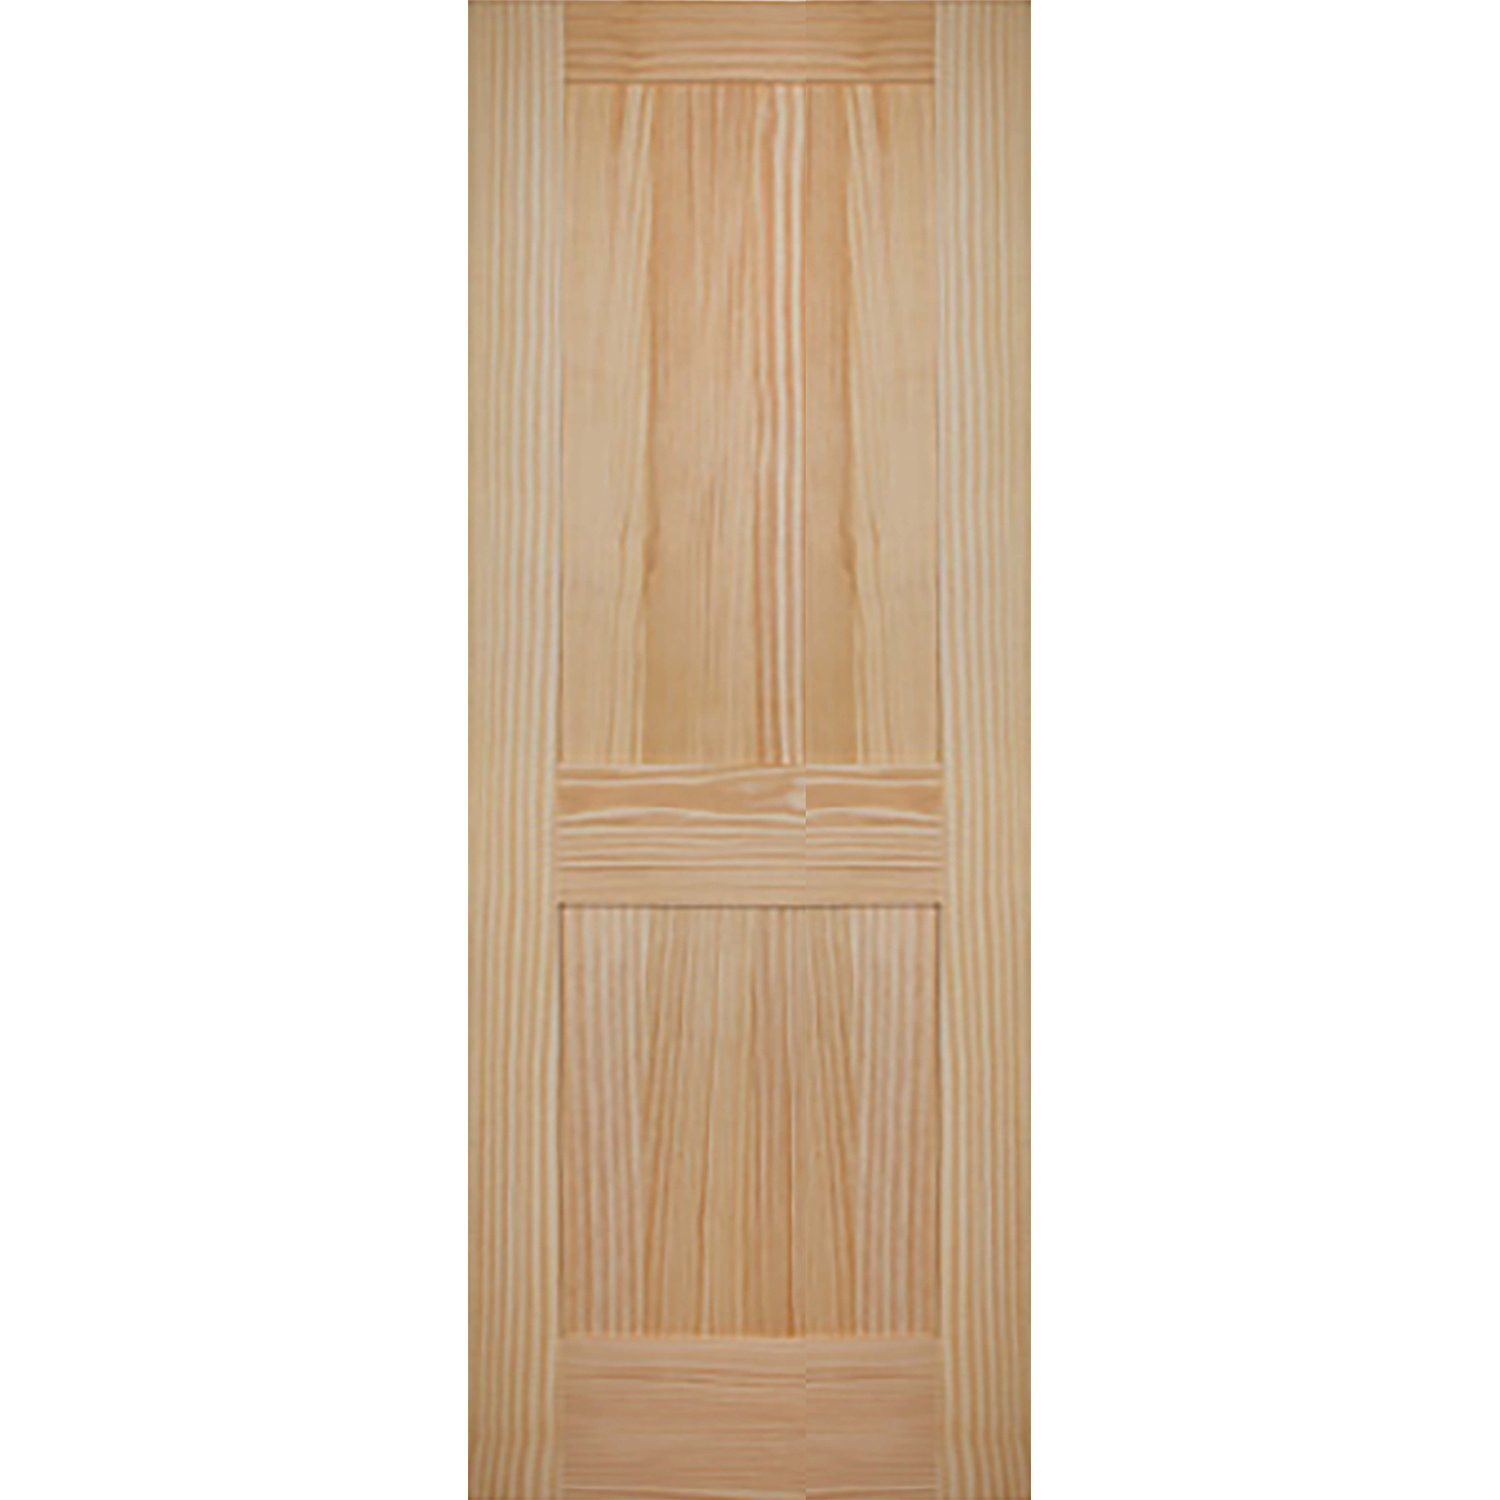 2 Panel 30 x 80 x 1 3/8 - Knotty Pine Door Shaker